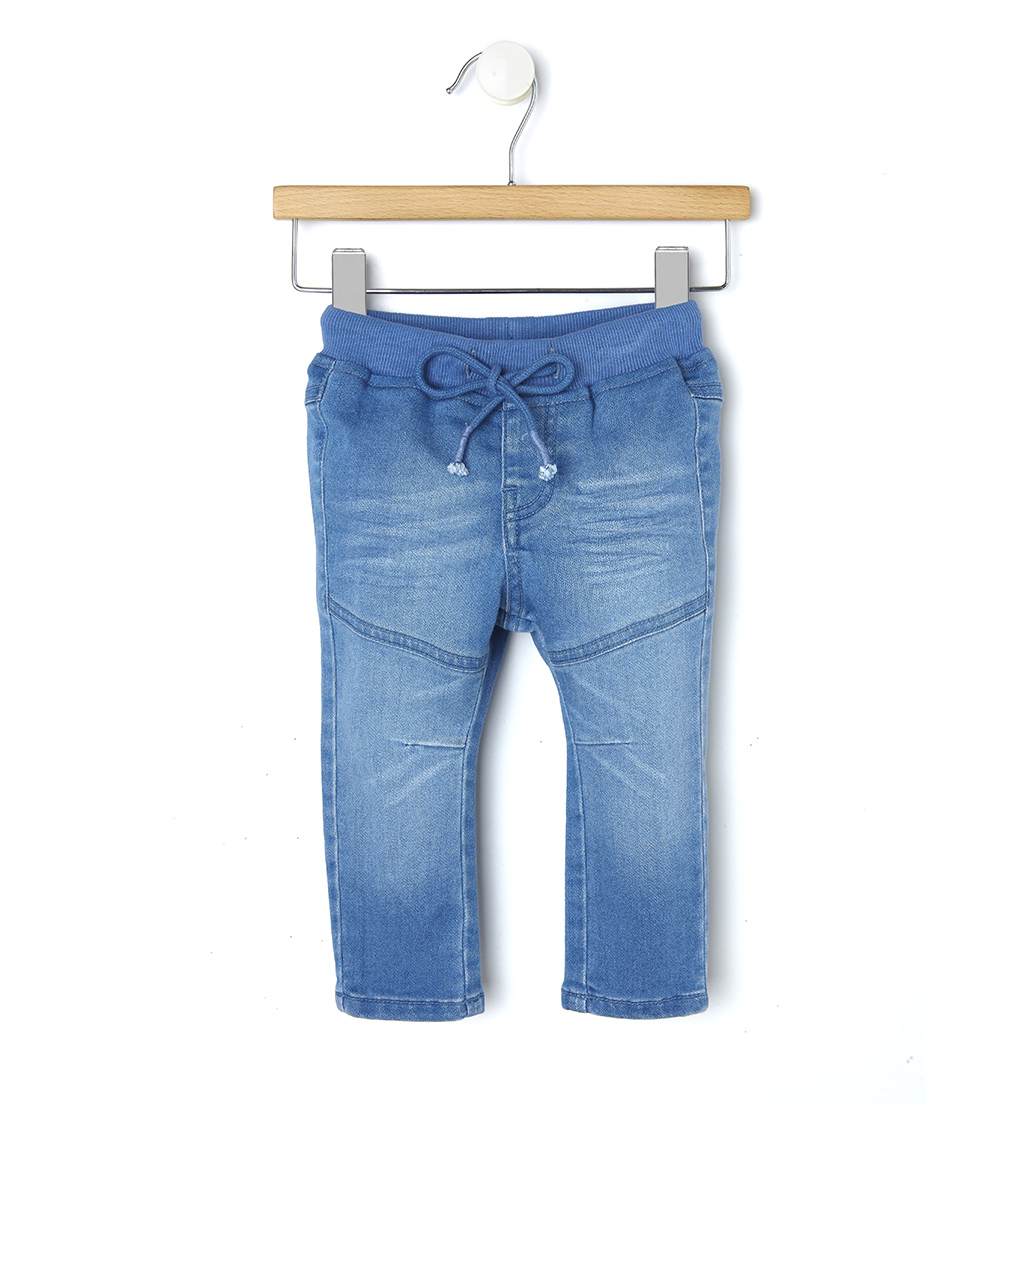 βρεφικό τζιν παντελόνι ανοιχτό μπλε για αγόρι - Prénatal